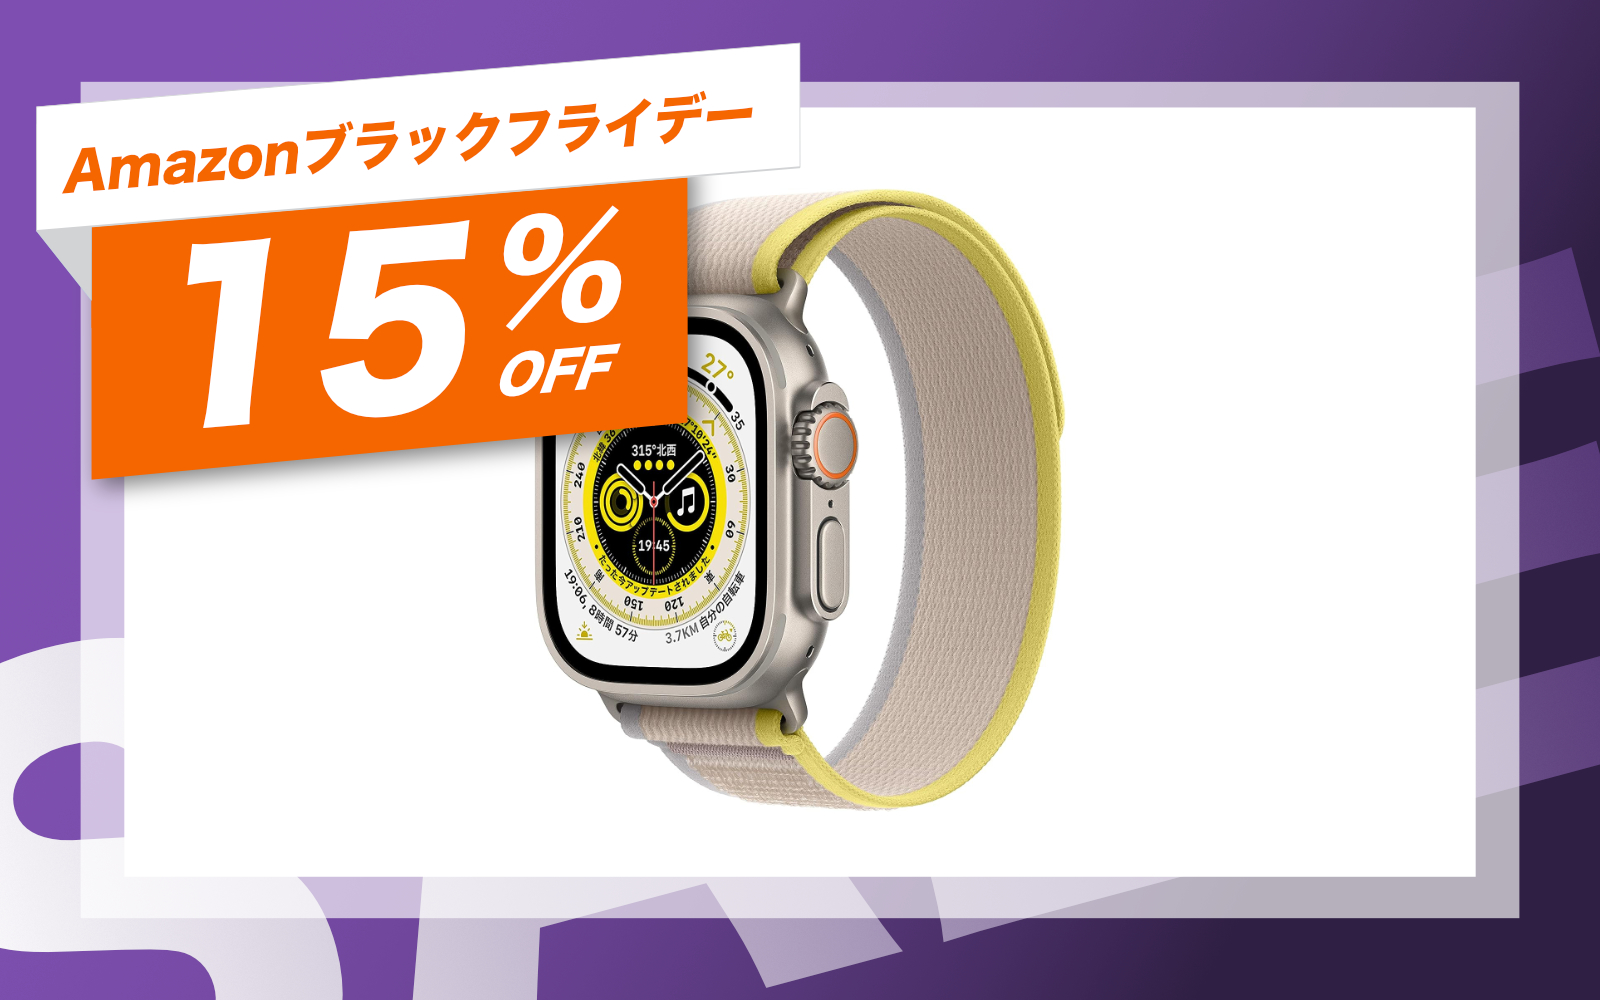 Apple Watch Ultra is mega sale